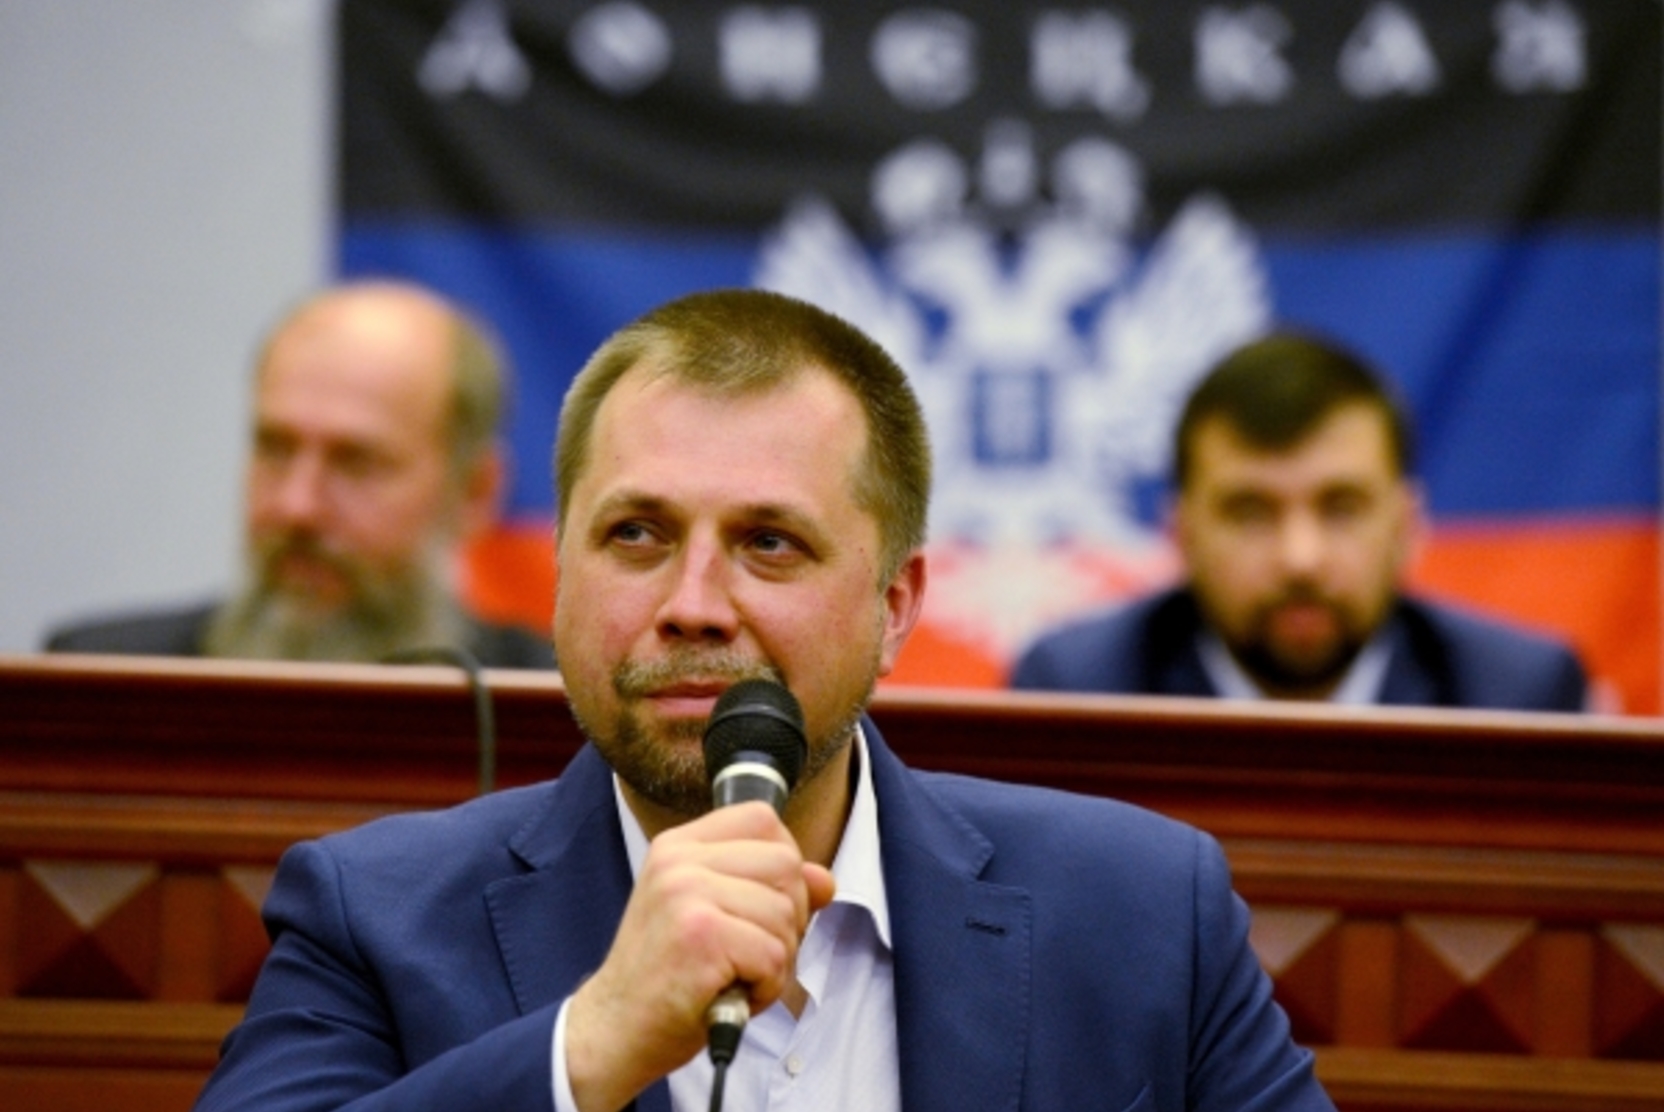 «Украины не будет!» Бородай назвал неизбежным присоединение Донбасса к РФ